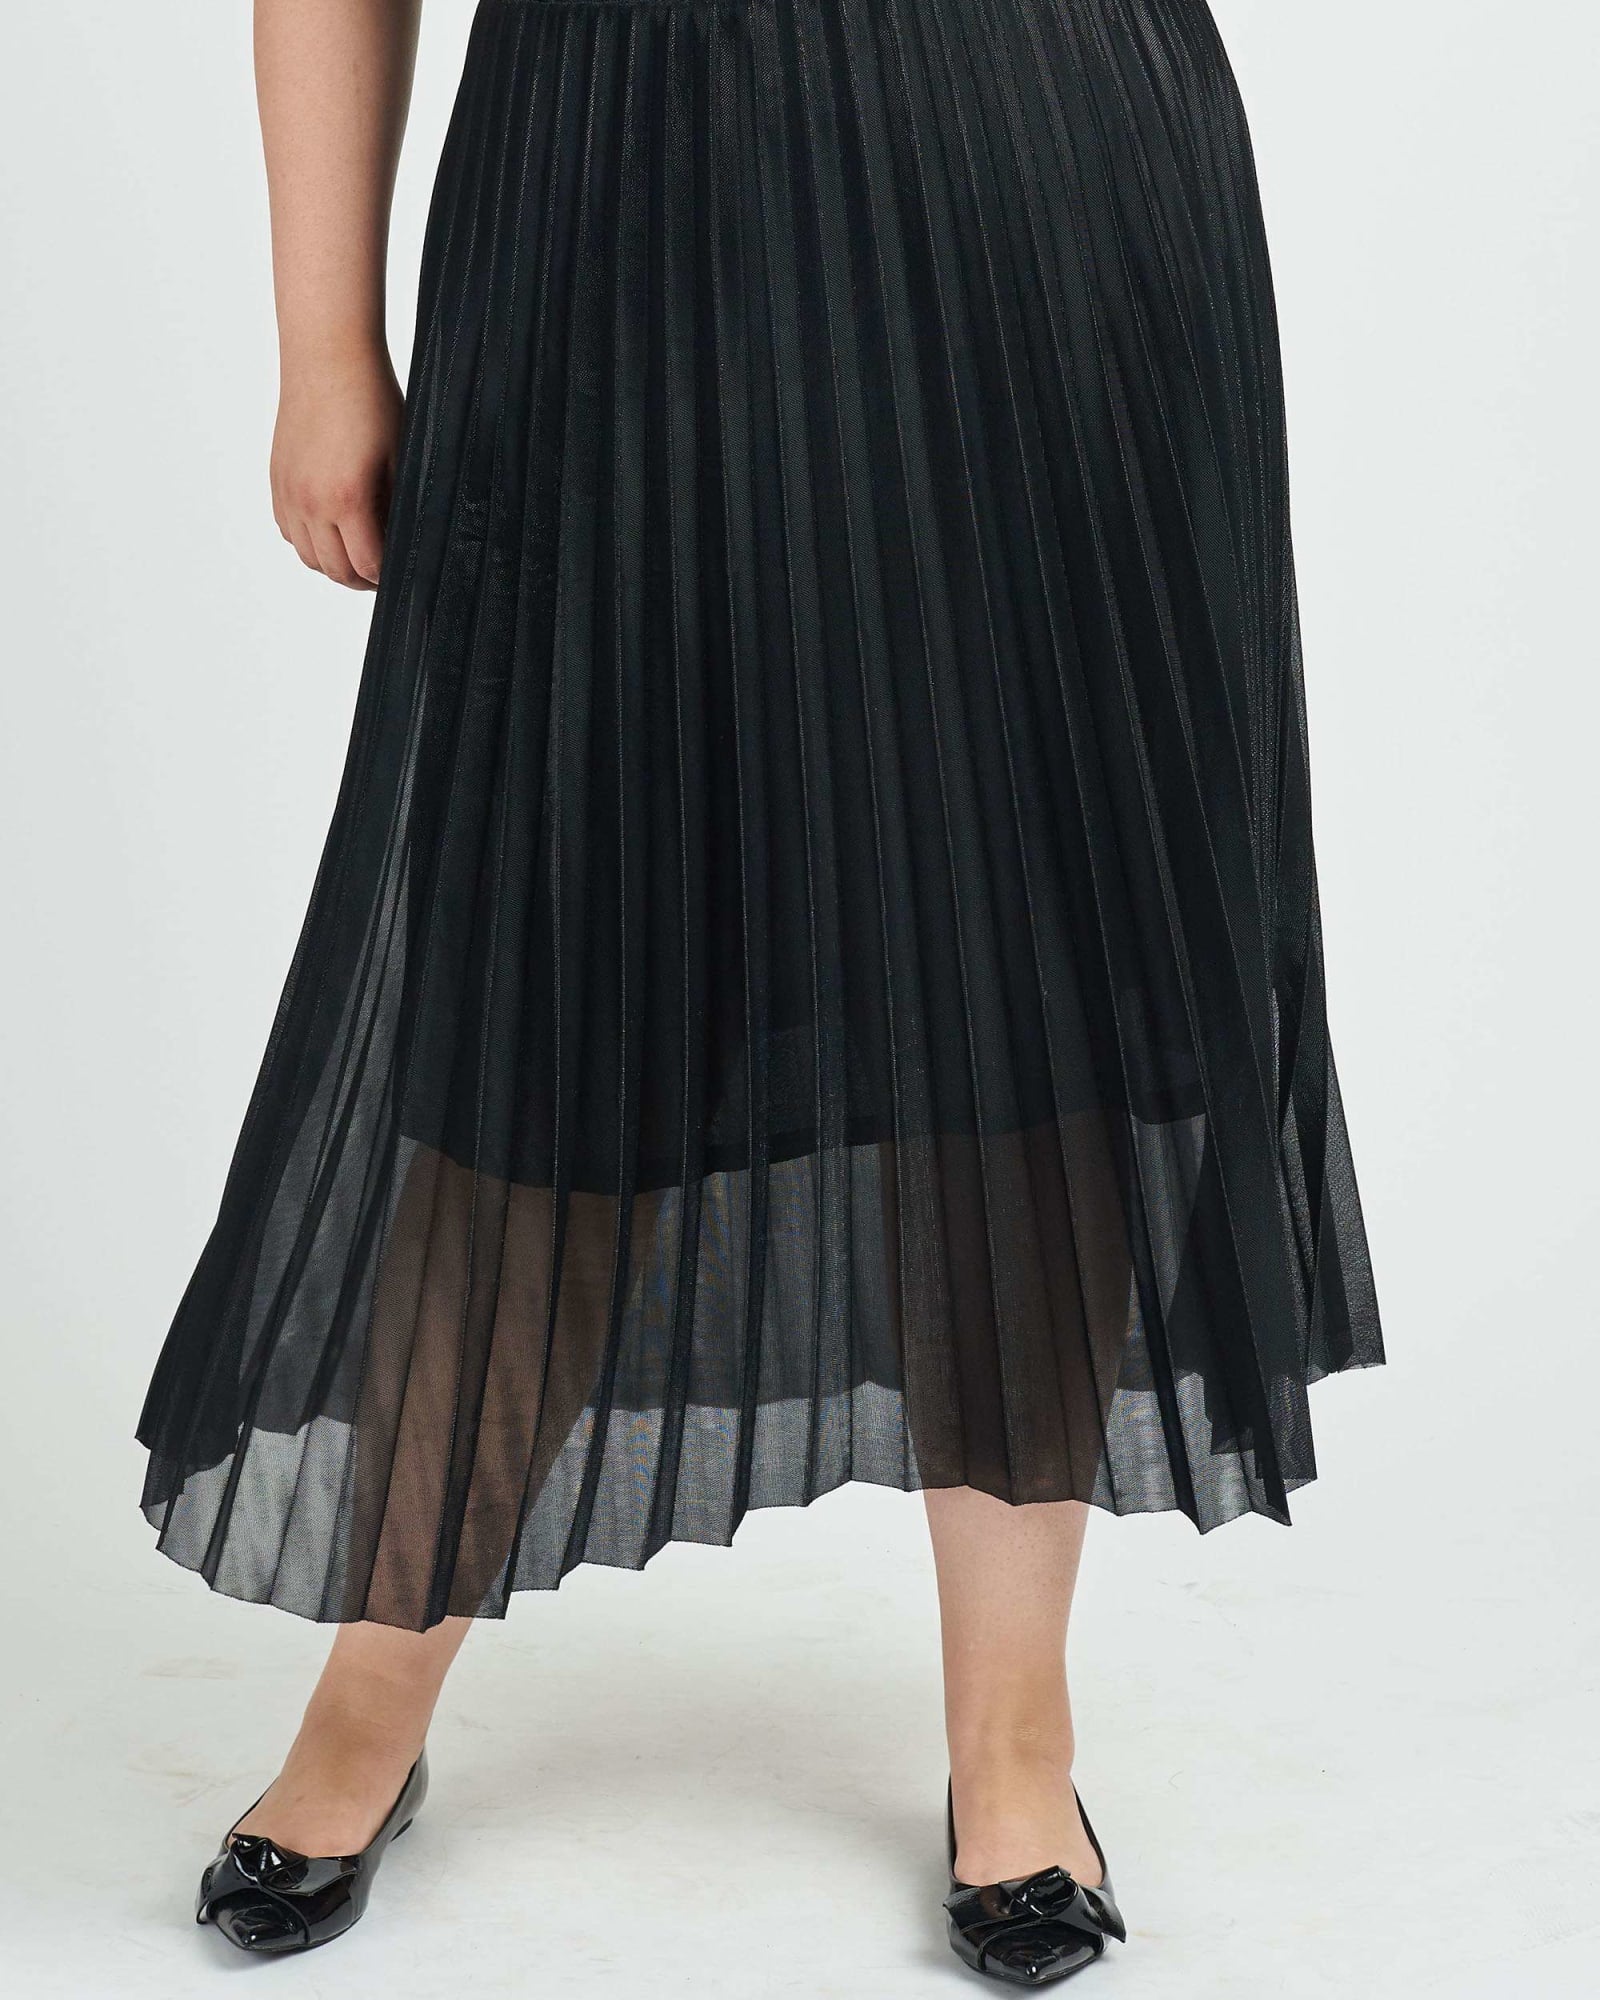 Skirt With Elastic Waistband